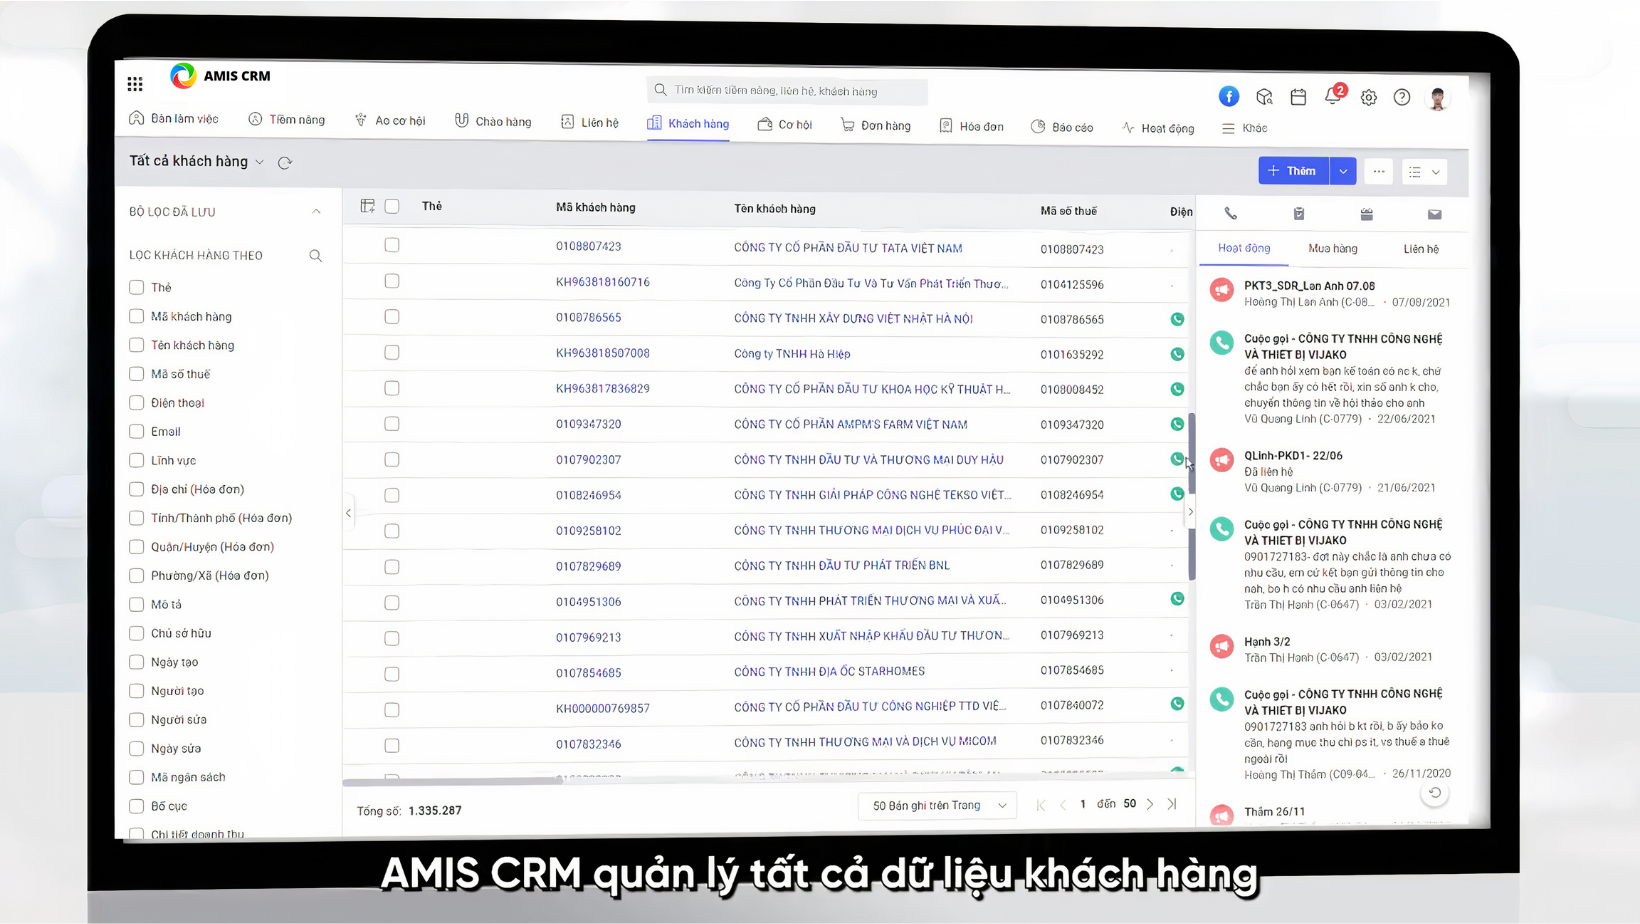 Lưu trữ dữ liệu khách hàng với AMIS CRM